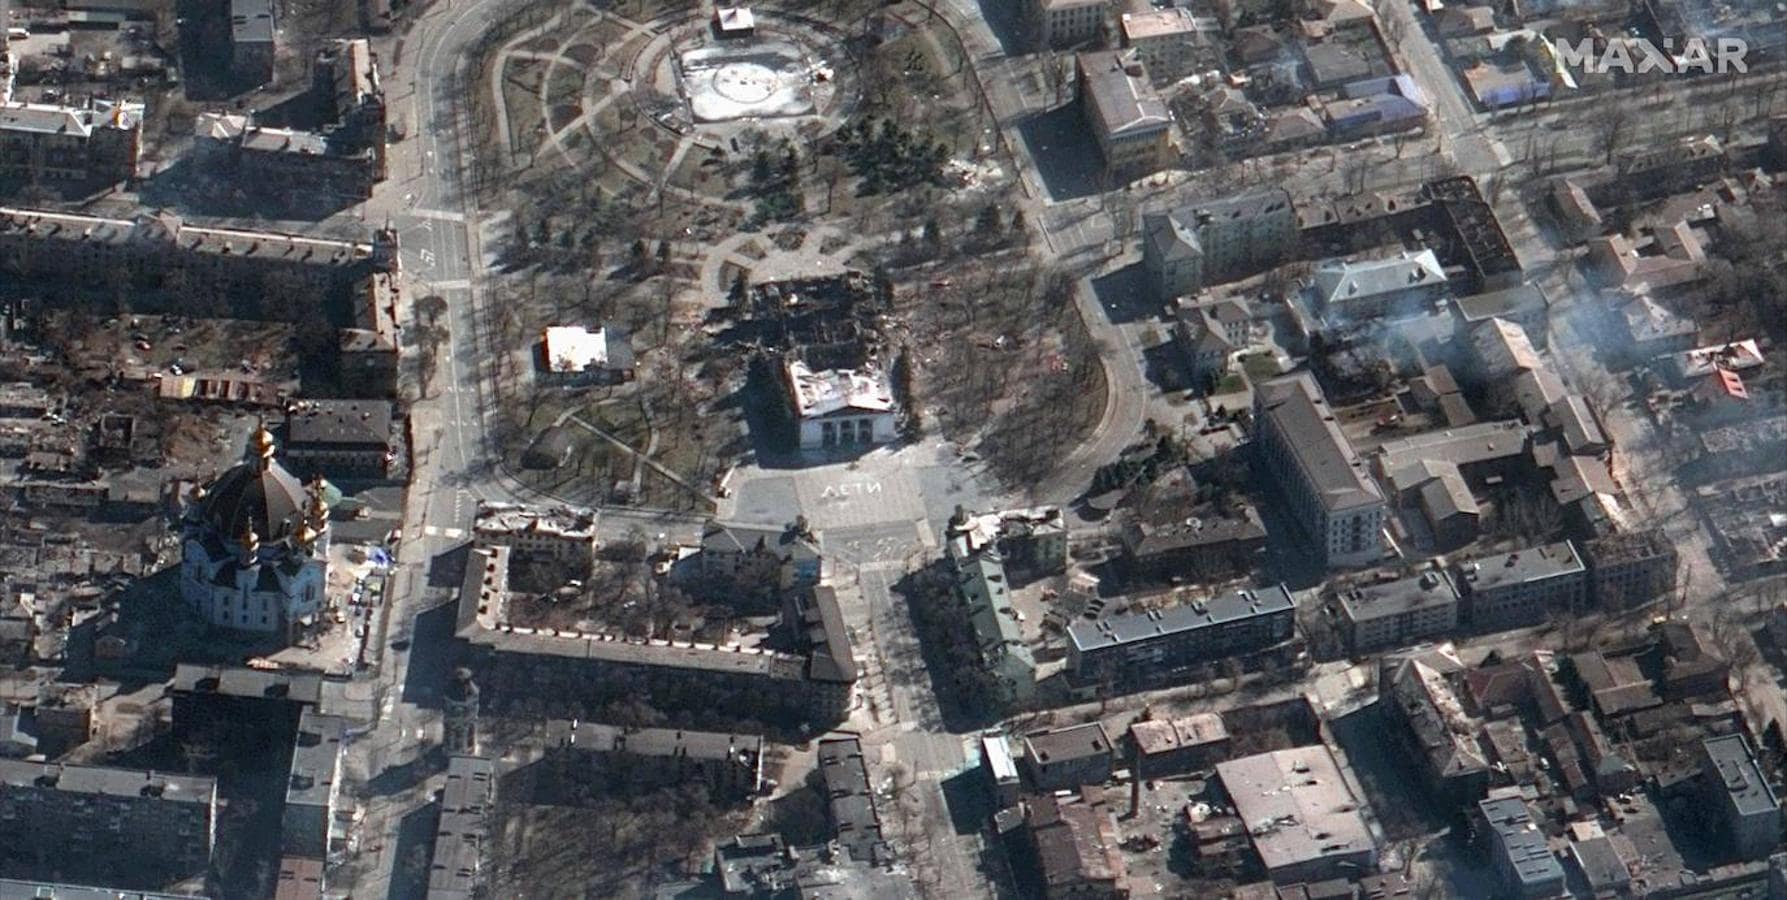 Edificios con civiles arrasados. Un teatro de Mariúpol que albergaba a decenas de personas en busca de refugio quedó completamente destruido por los bombardeos rusos, como muestra la imagen aérea.